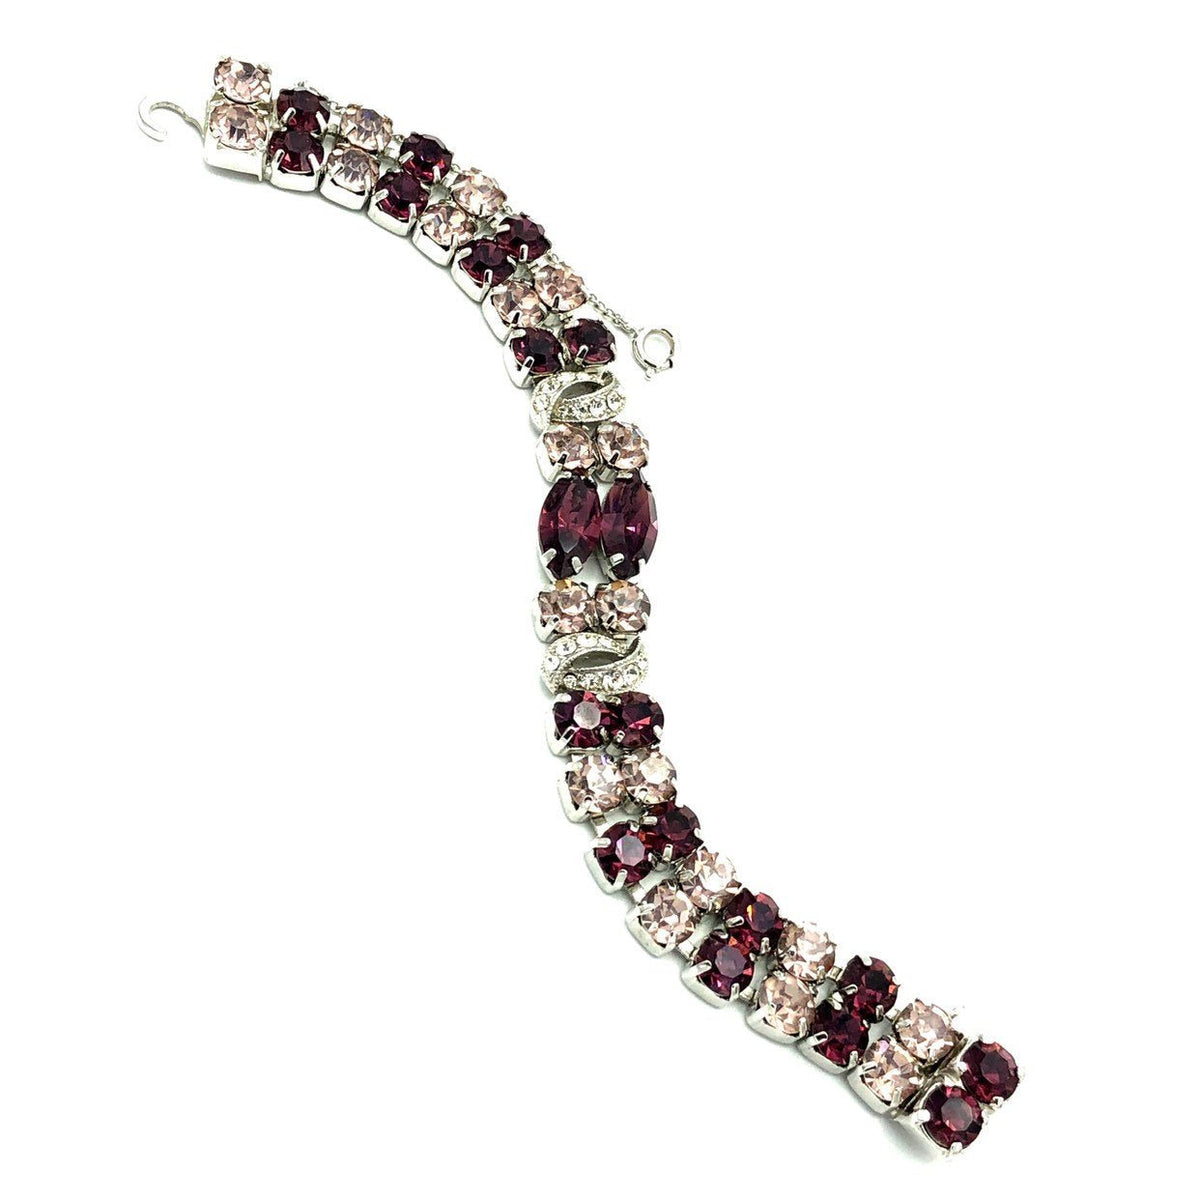 Eisenberg Ice Vintage Purple Rhinestone Statement Bracelet - 24 Wishes Vintage Jewelry